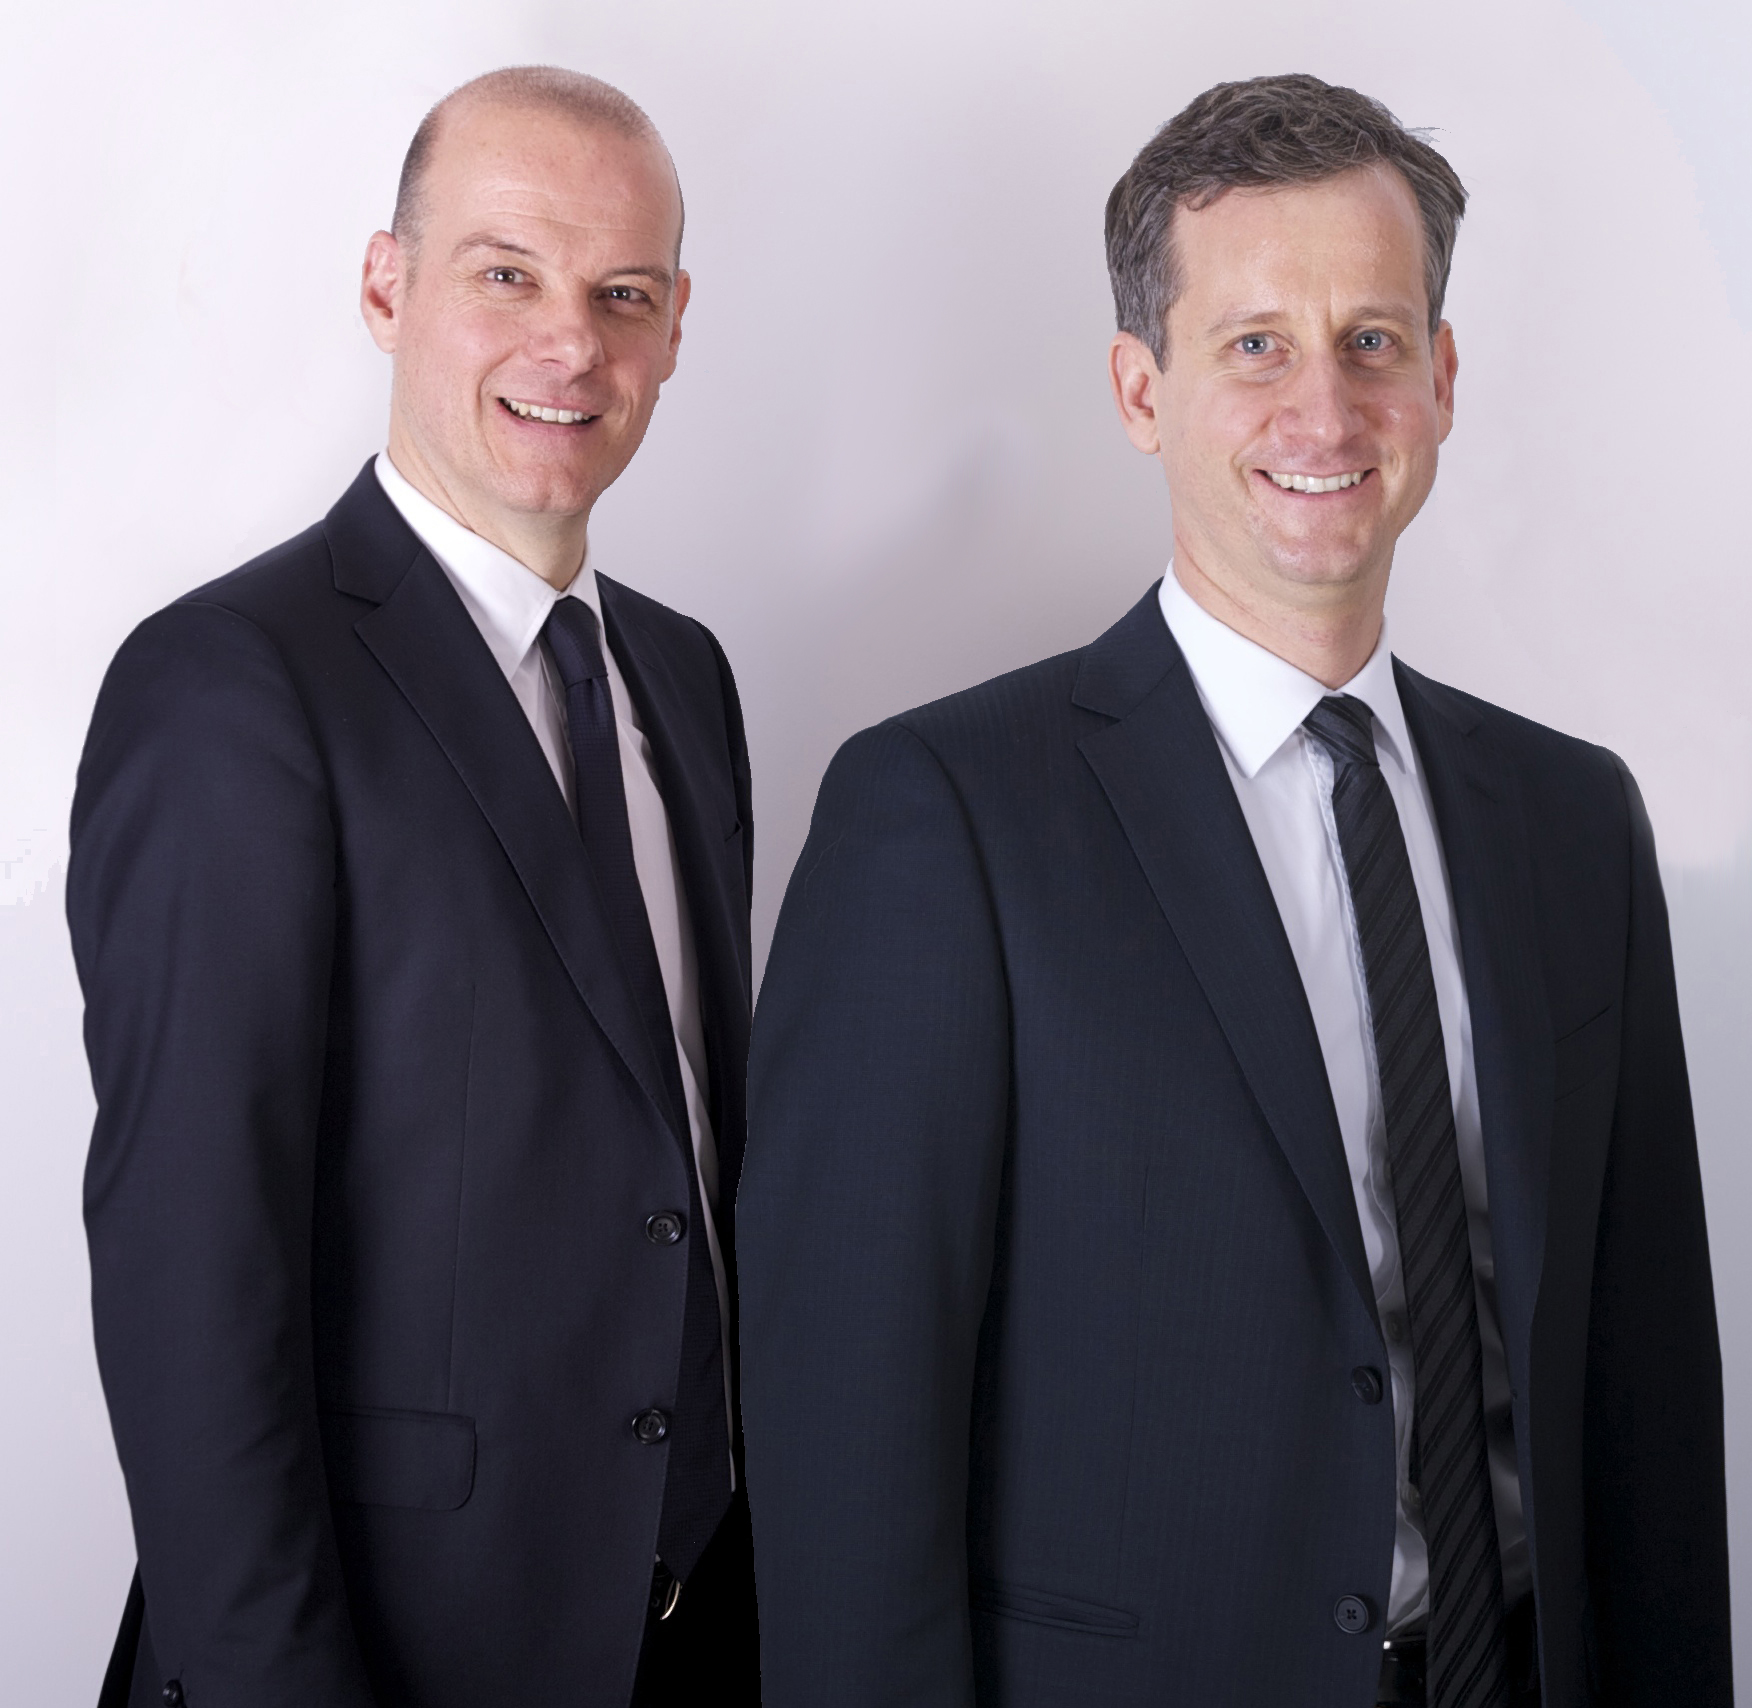 Zu sehen sind die beiden Geschäftsführer der neu gegründeten Präg Energiedienstleistungen GmbH & Co. KG, Klaus-Rüdiger Bischoff und Marc Deisenhofer.